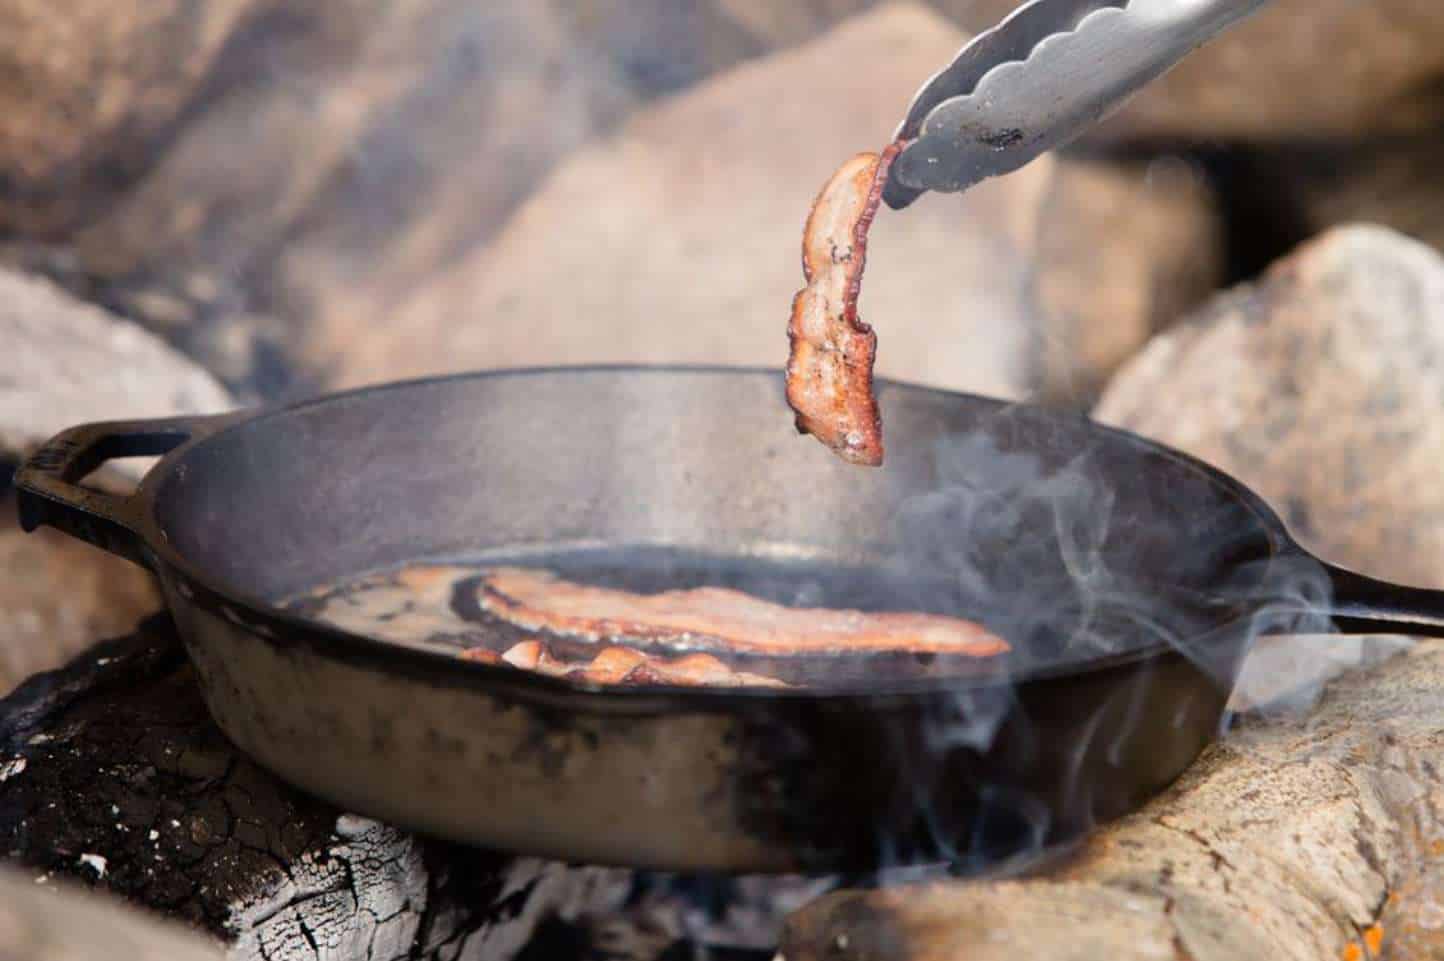 Why cast-iron pans smoke